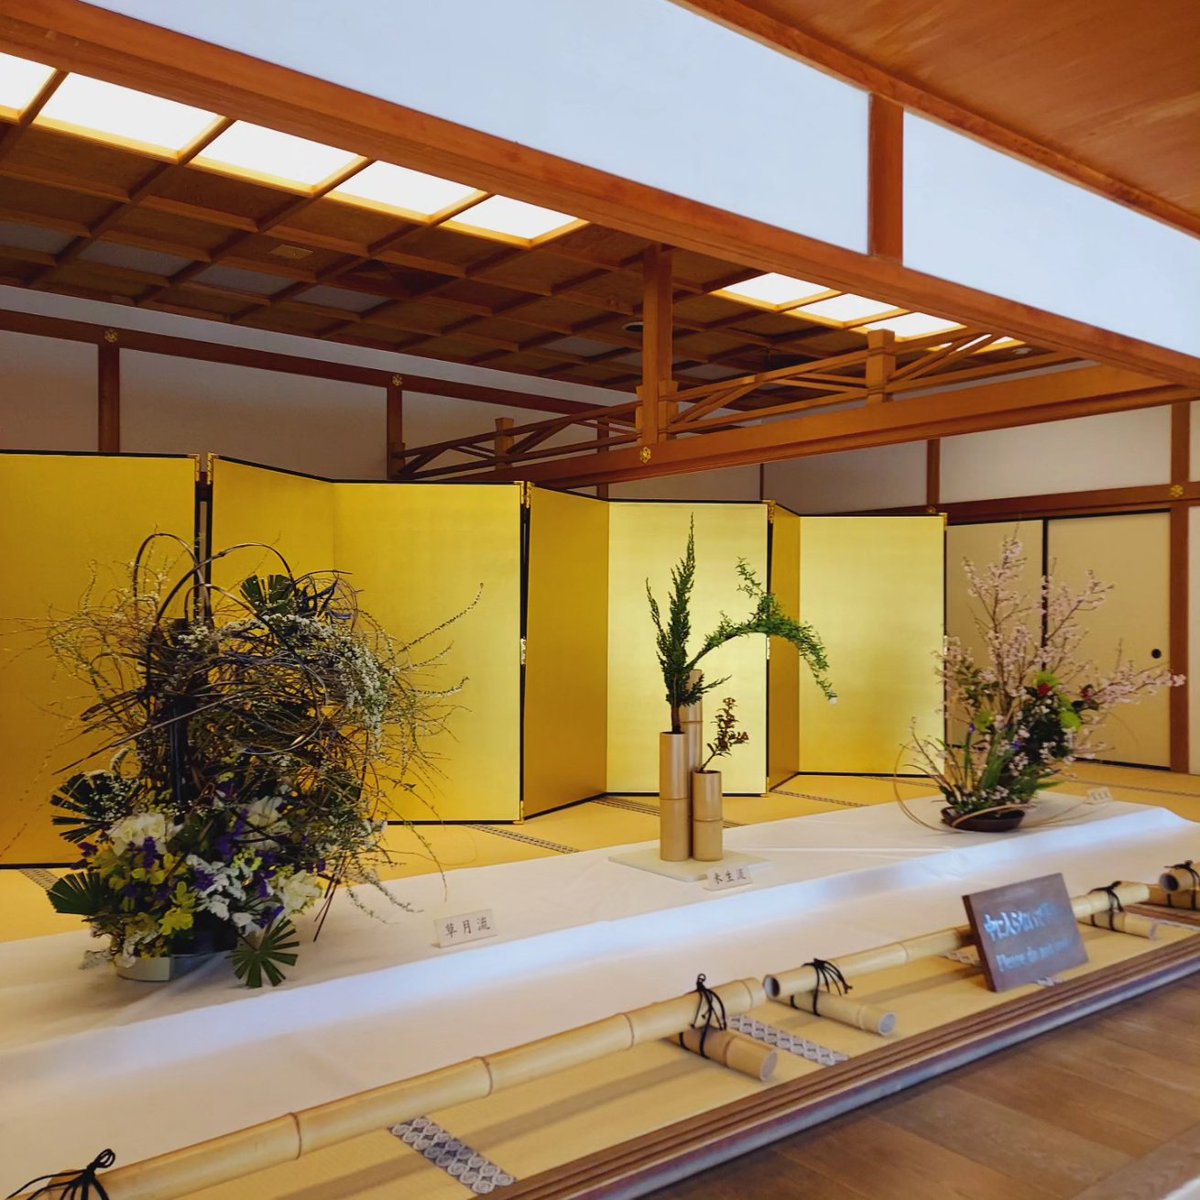 本日3月19日(火)～24日(日)まで【いけばな展】を開催しております。 14流派の作品を、正面玄関、活水軒前ロビー、潮音斎に展示しております。 是非、ご覧くださいませ。 #いけばな #ikebanaart #華道 #japaneseculture #好古園 #kokoen #日本庭園 #japanesegarden #姫路 #himejicatsle